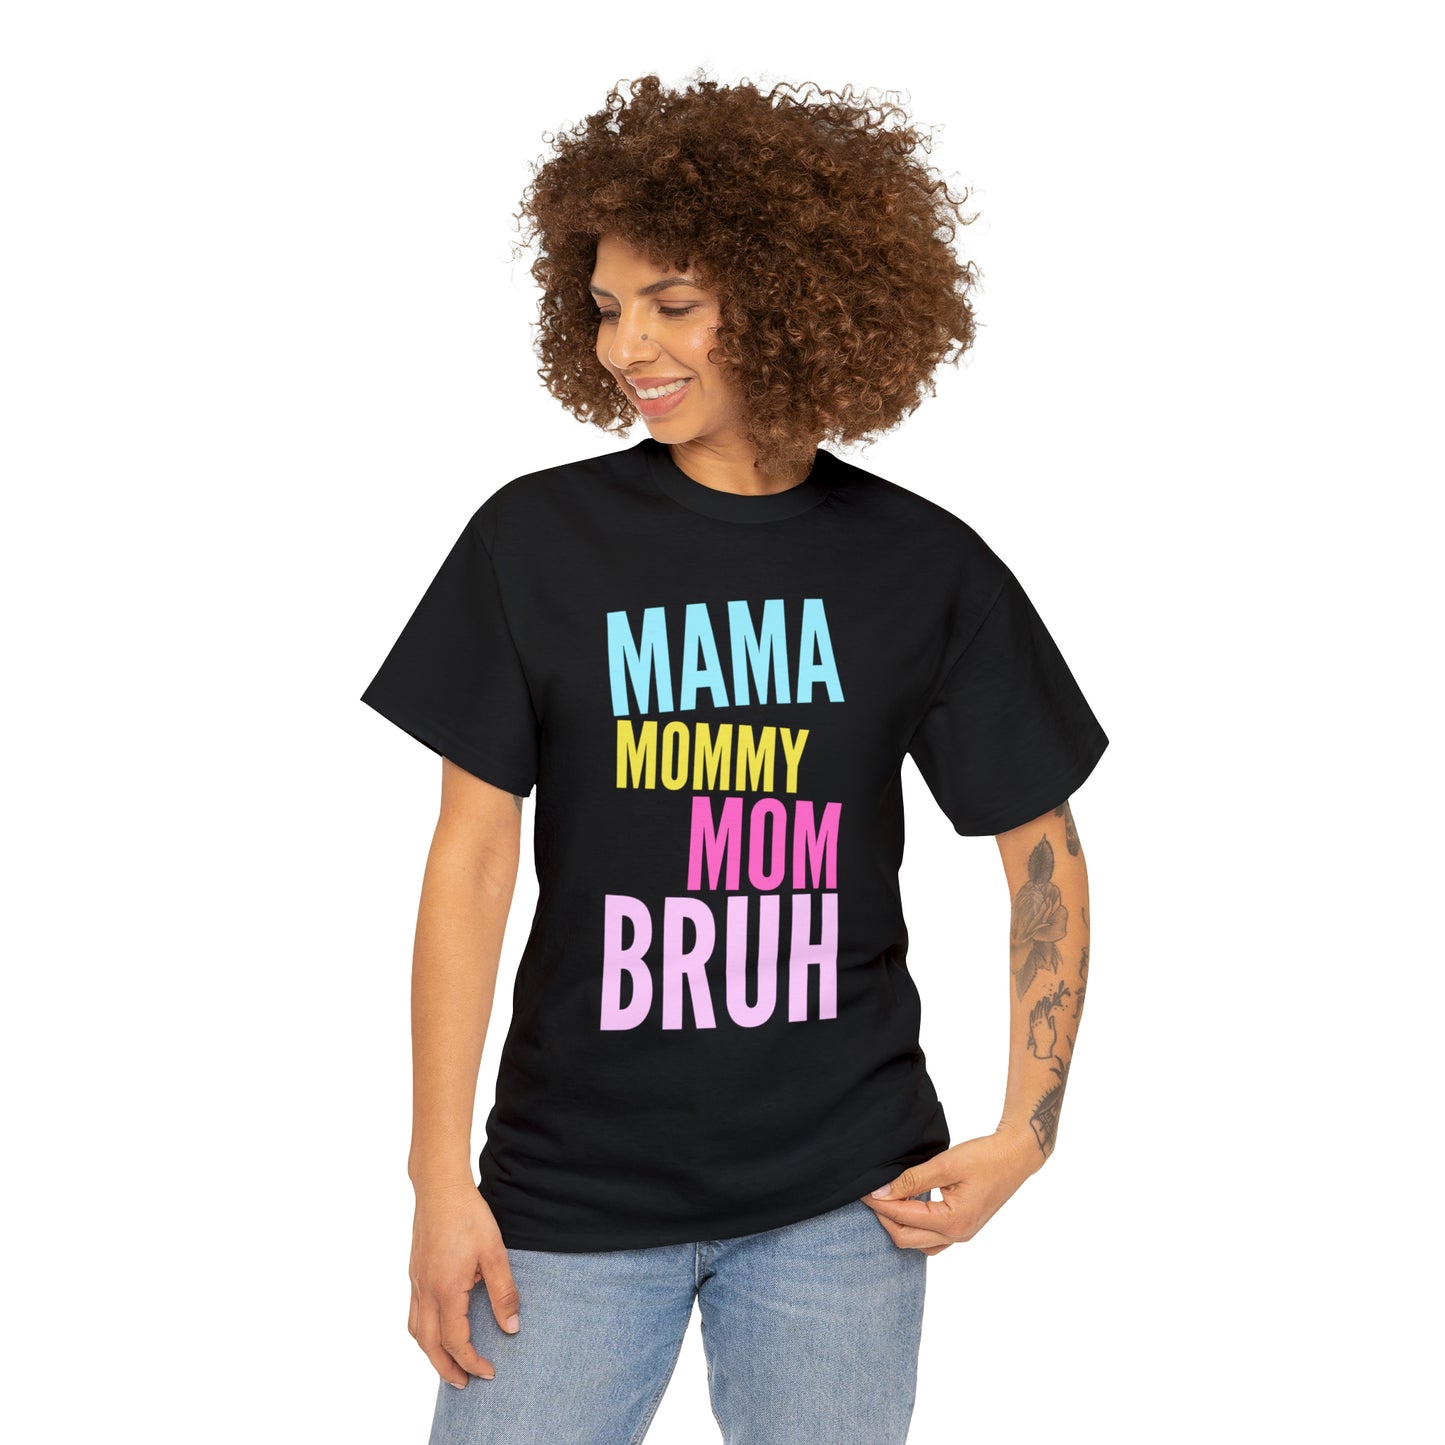 Humorous mom apparel